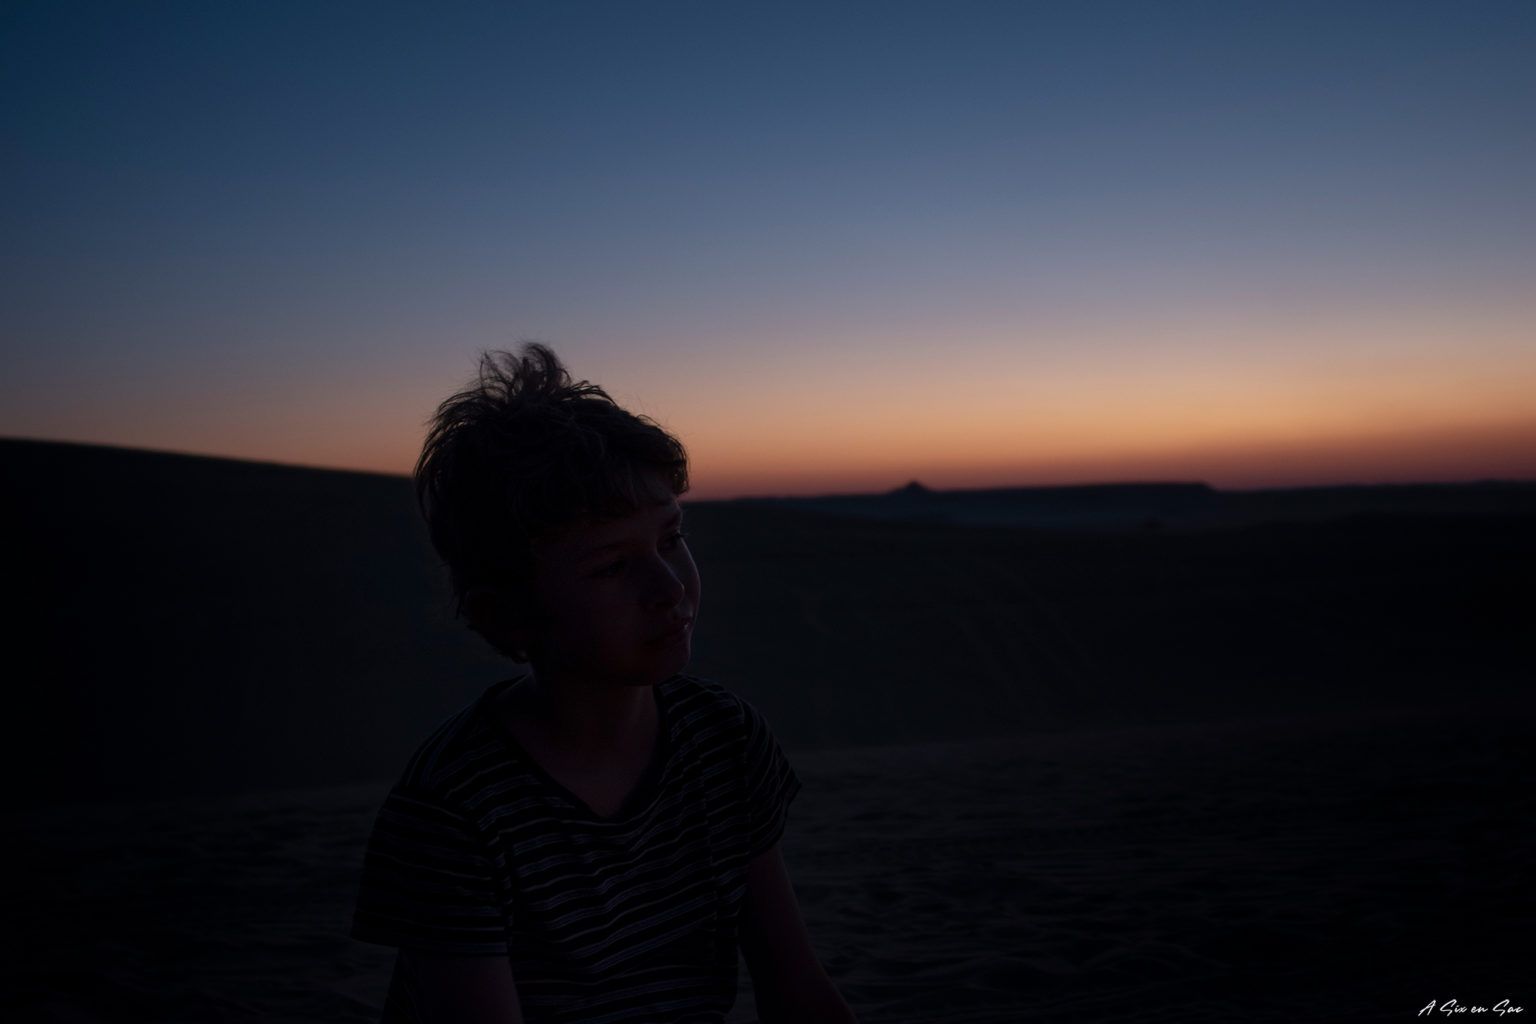 Pierre au près du feu pour le thé dans le désert du Sahara en Egypte ( excursion de 24h depuis l'oasis de Siwa )